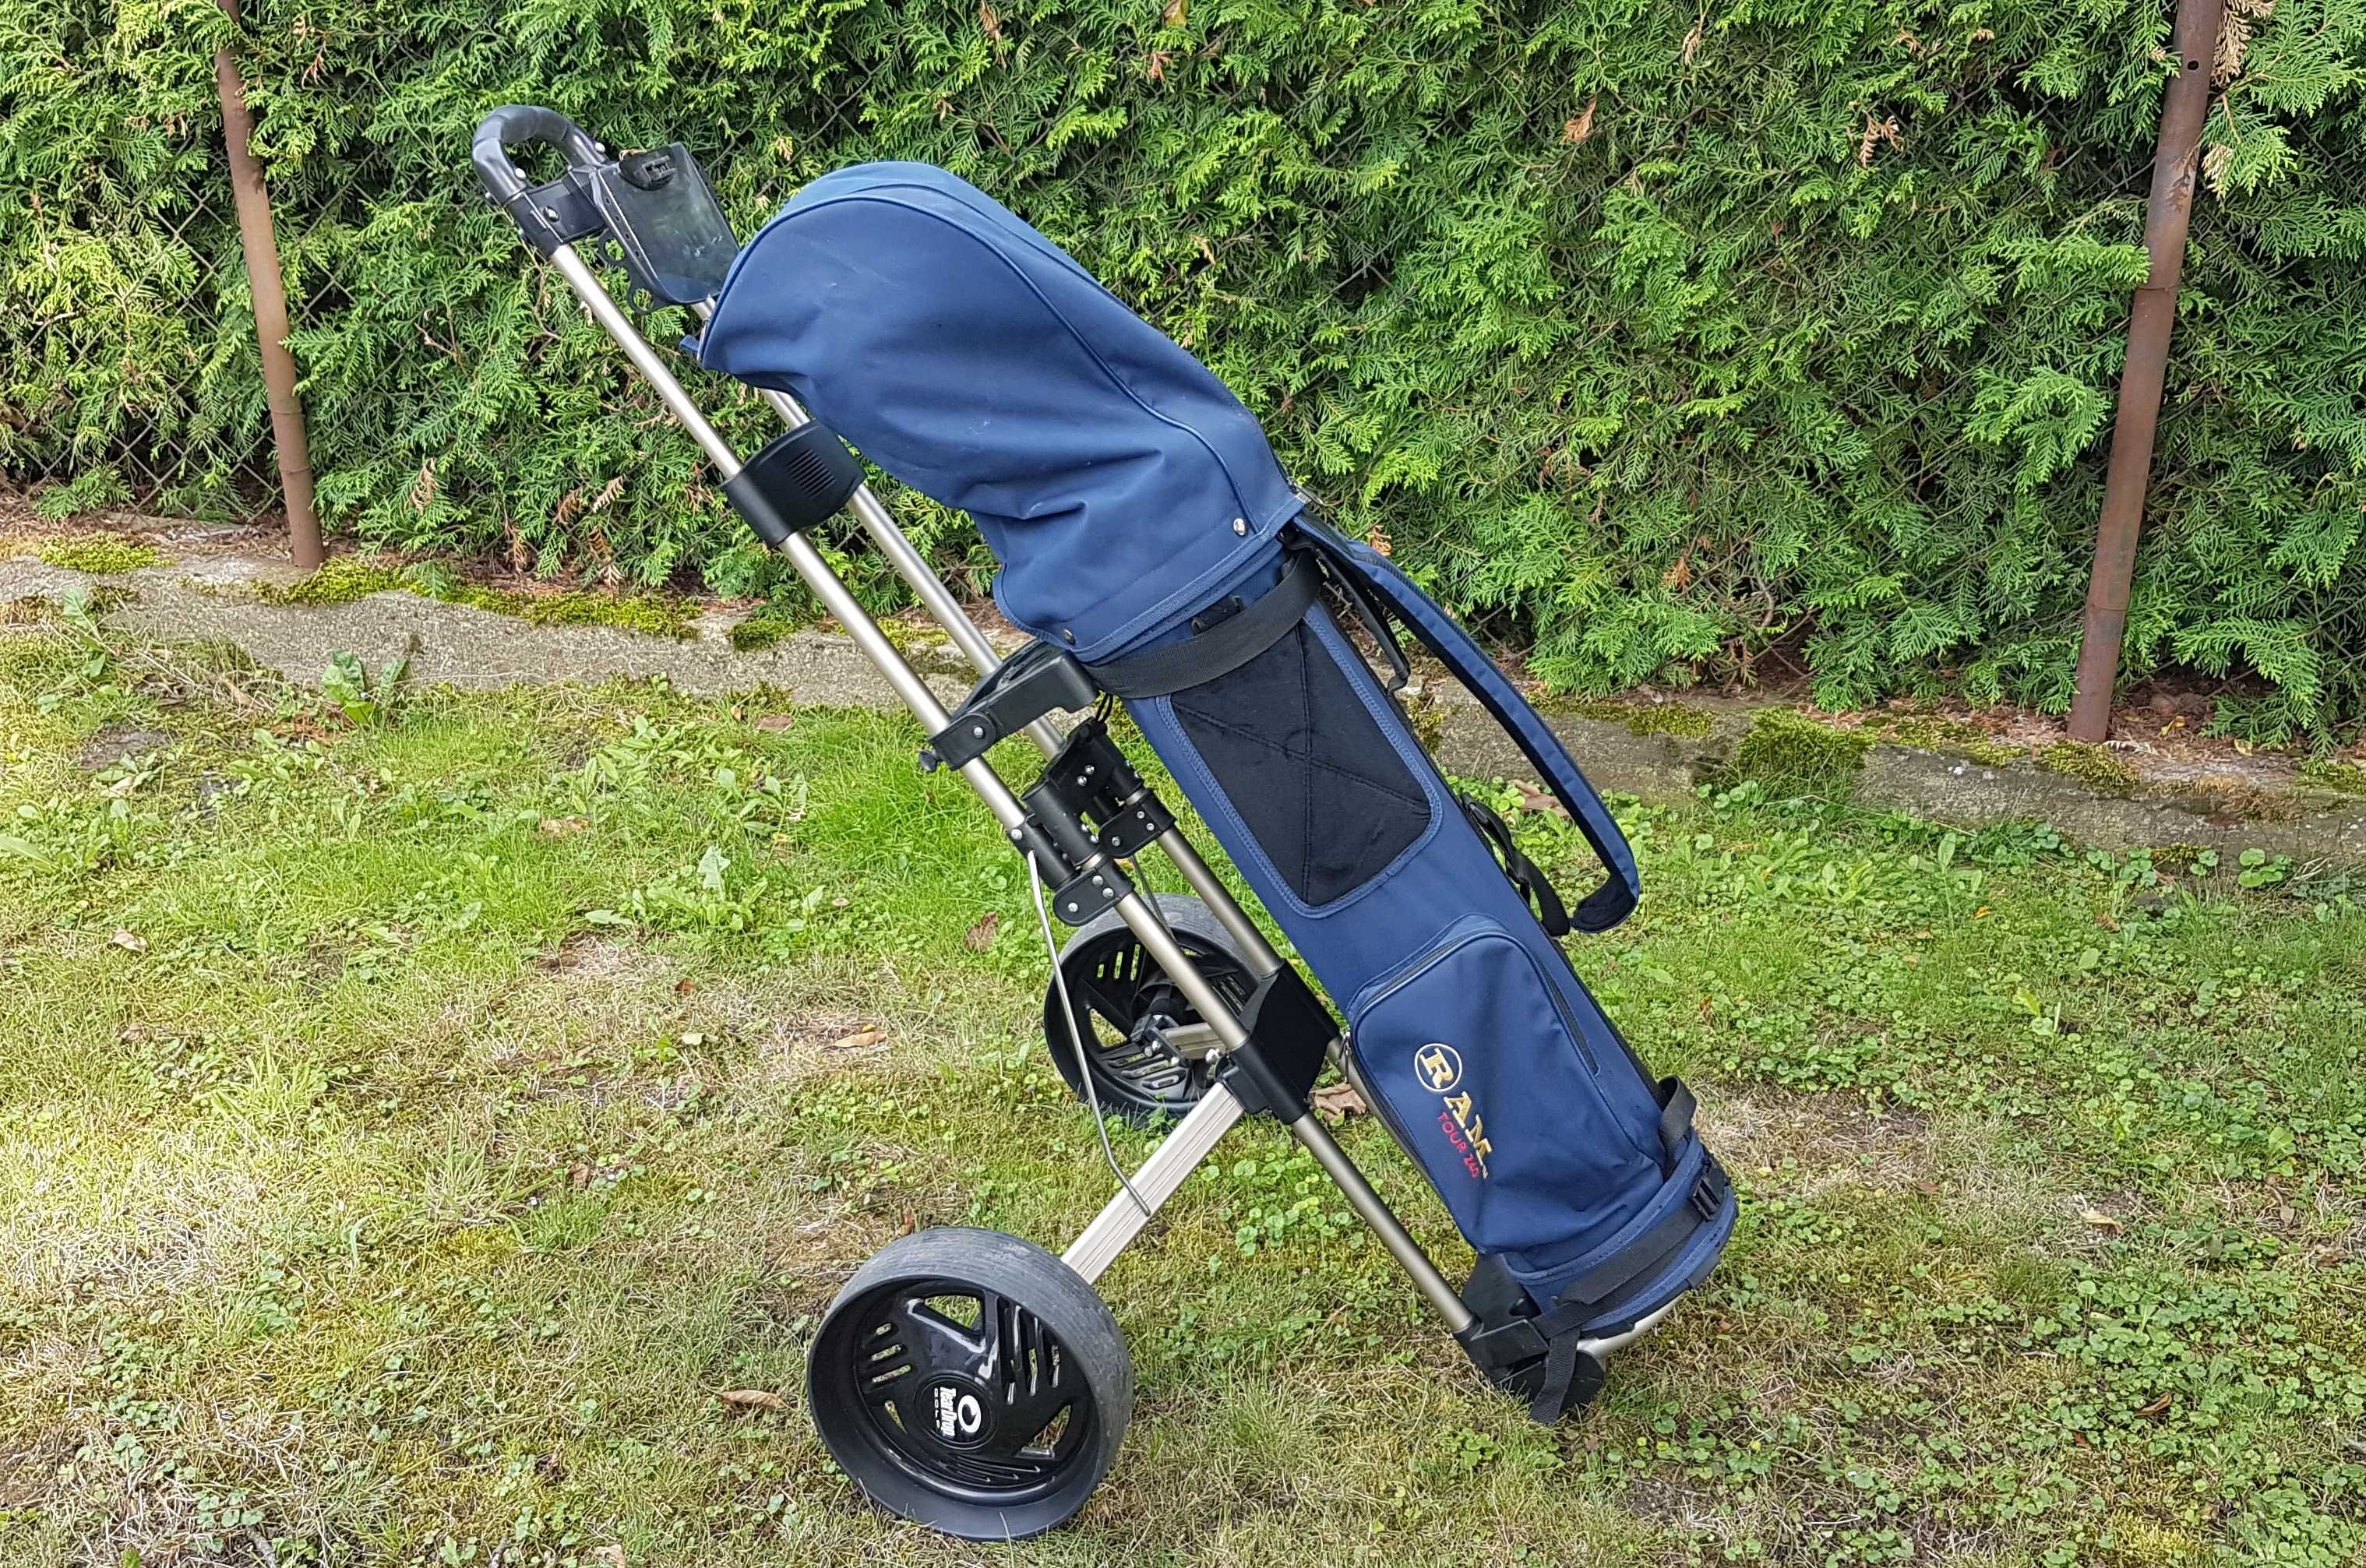 Kije golfowe RAM FX Over Size + Torba + Wózek - praktycznie nowe